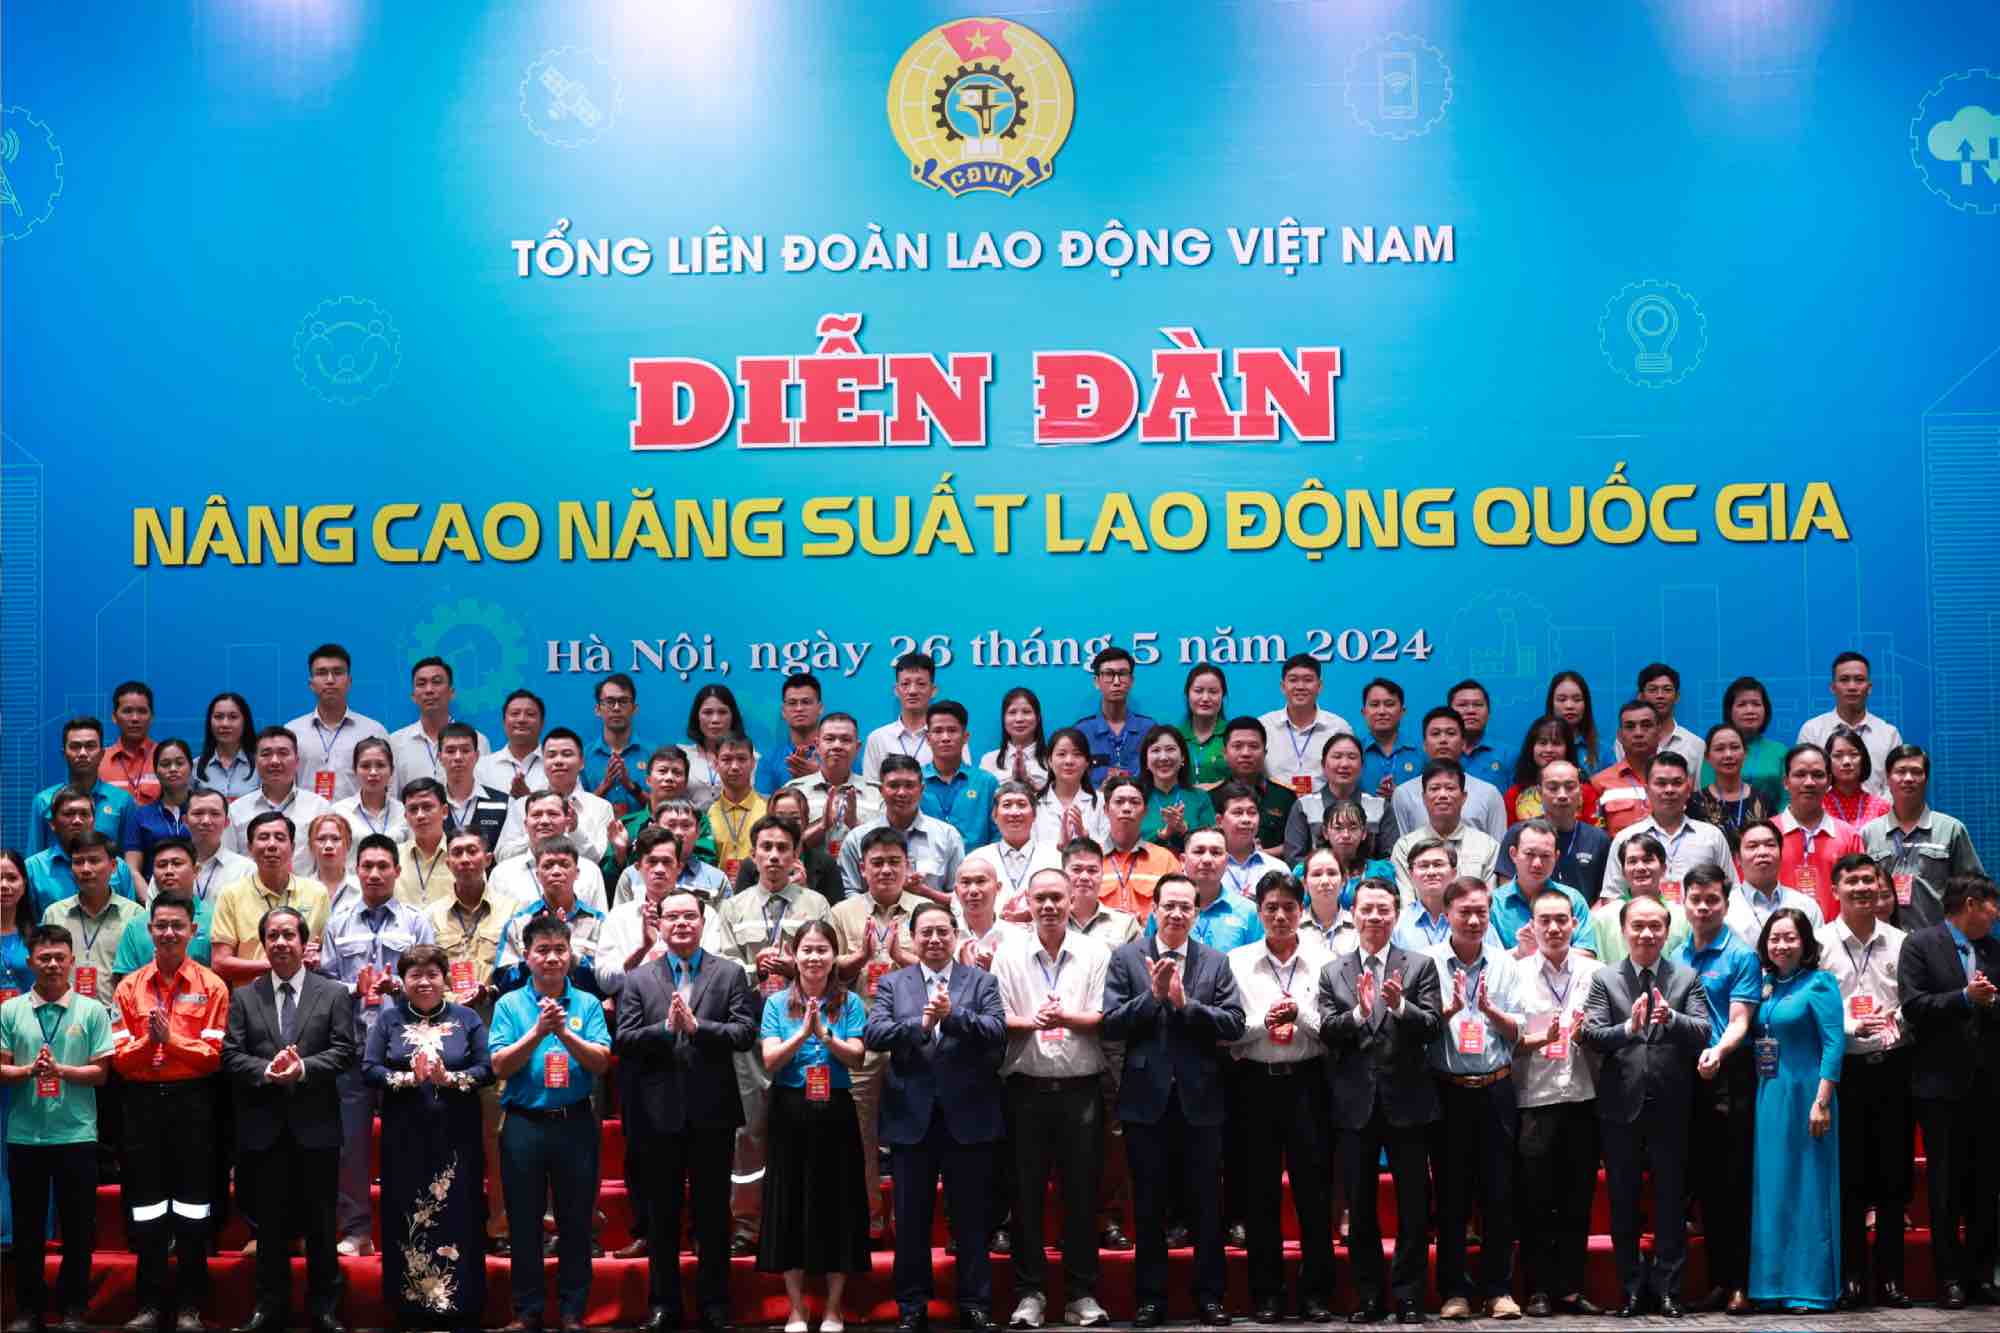 Thủ tướng Chính phủ tặng quà và chụp ảnh lưu niệm cùng 95 đoàn viên, người lao động tiêu biểu trong cả nước có năng suất lao động cao, có nhiều sáng kiến, thành tích trong lao động sản xuất. Ảnh: Hải Nguyễn